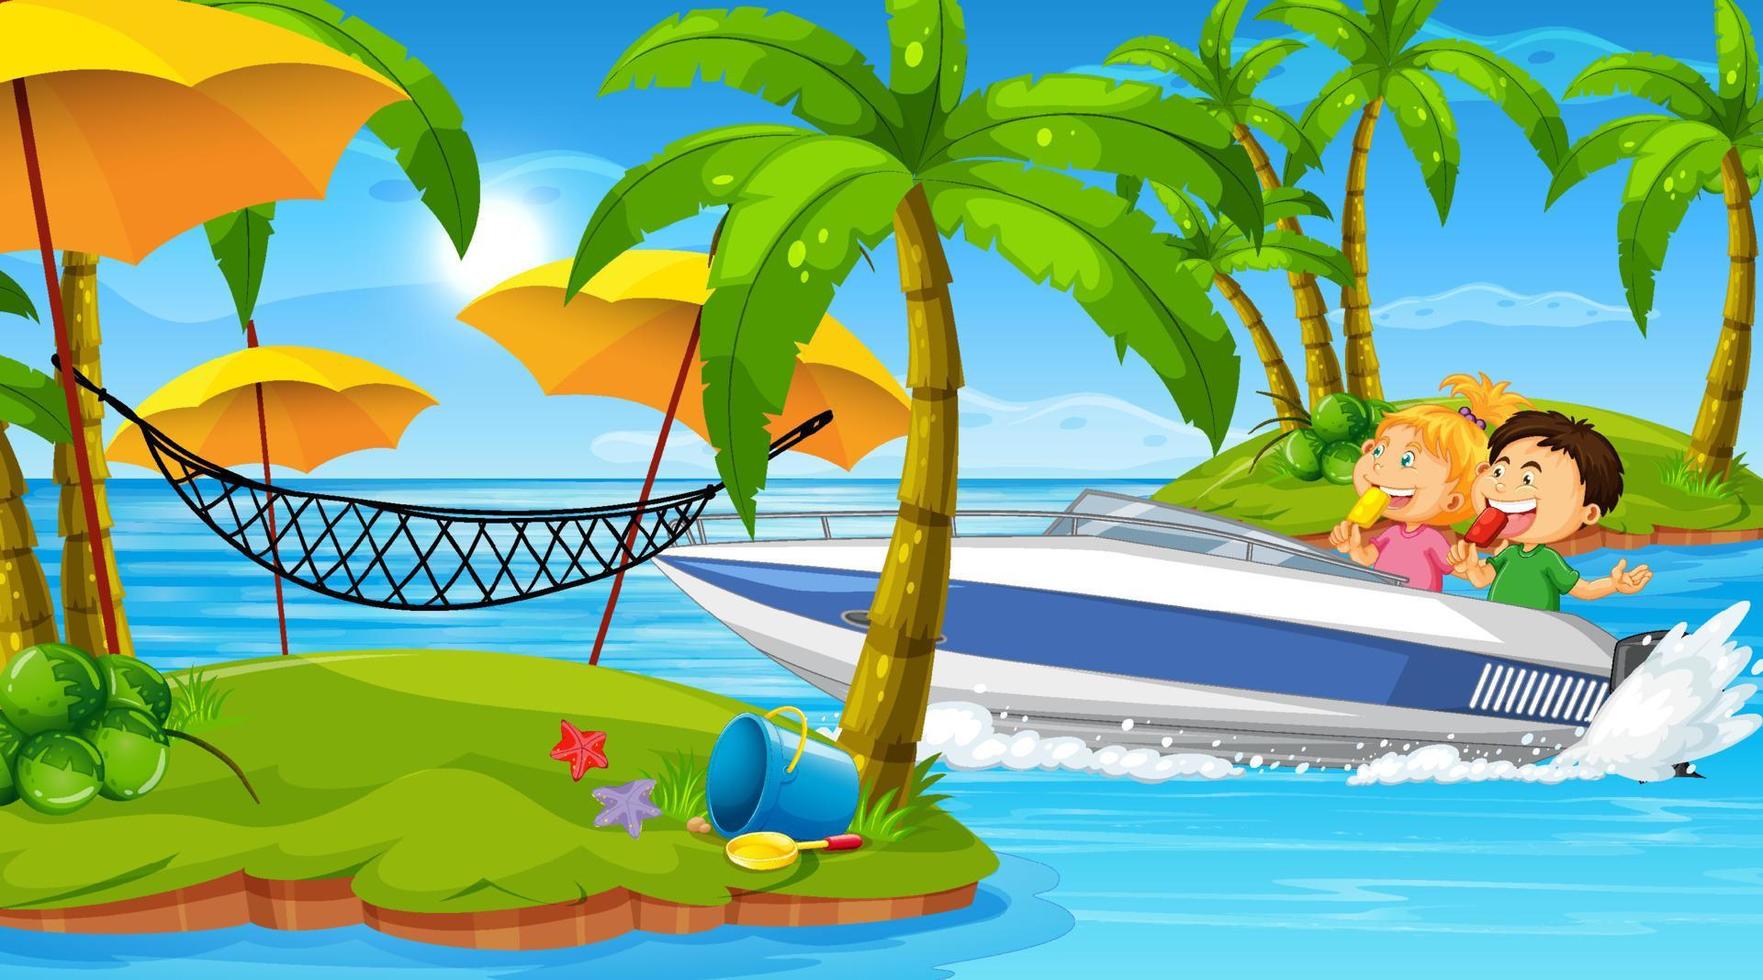 Ocean scenery with happy children on speedboat 5098323 Vector Art ...